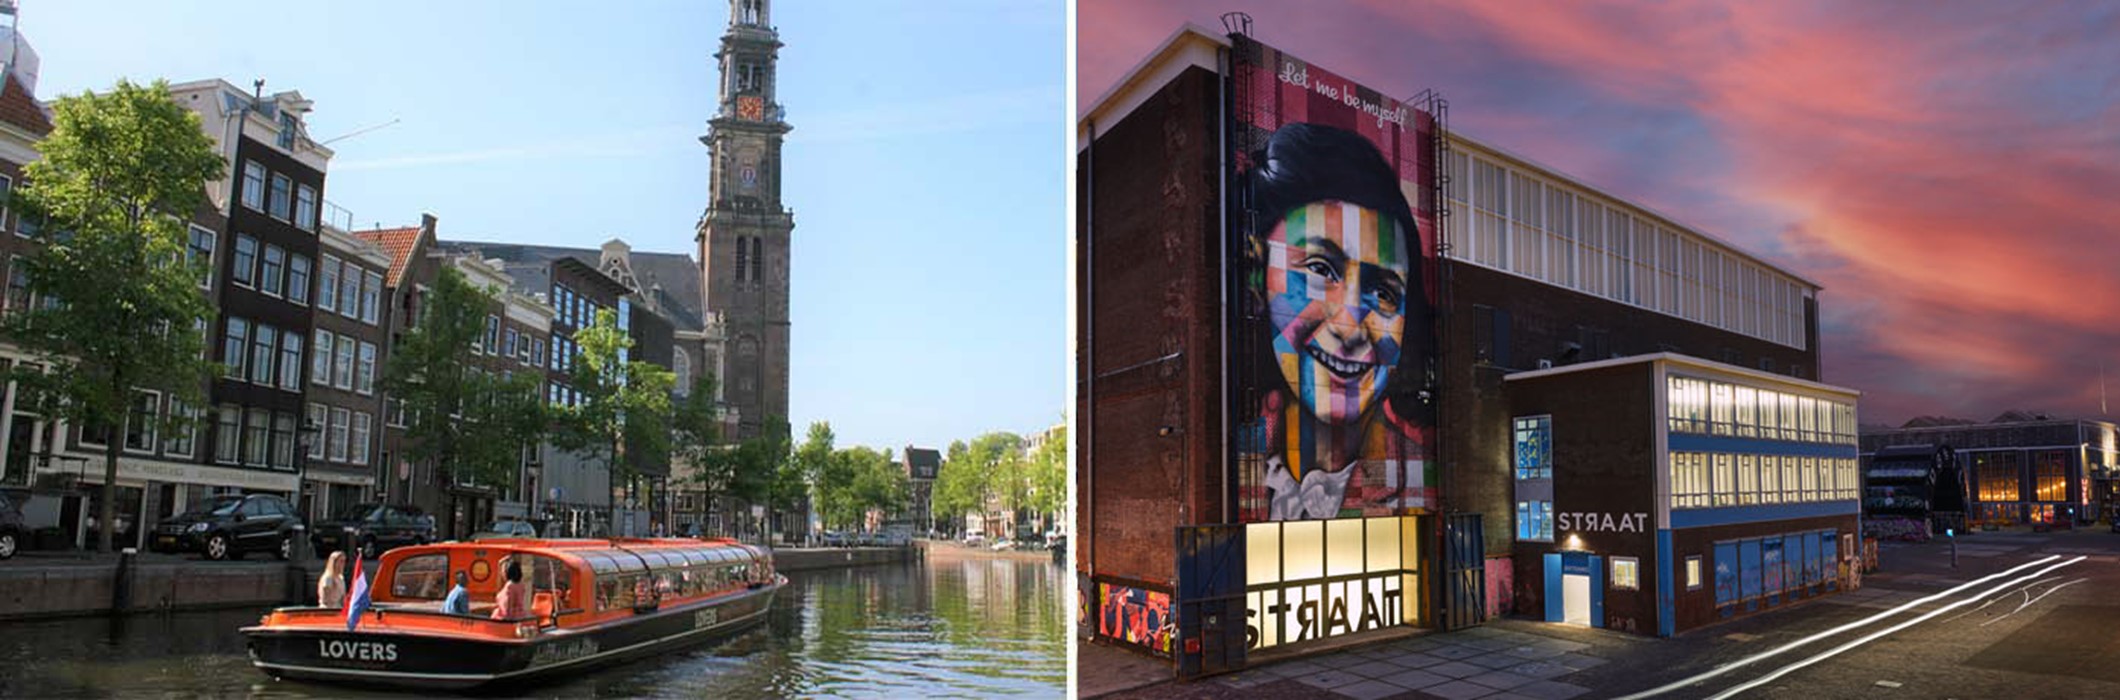 Museo STRAAT + Crucero por el Canal de Ámsterdam